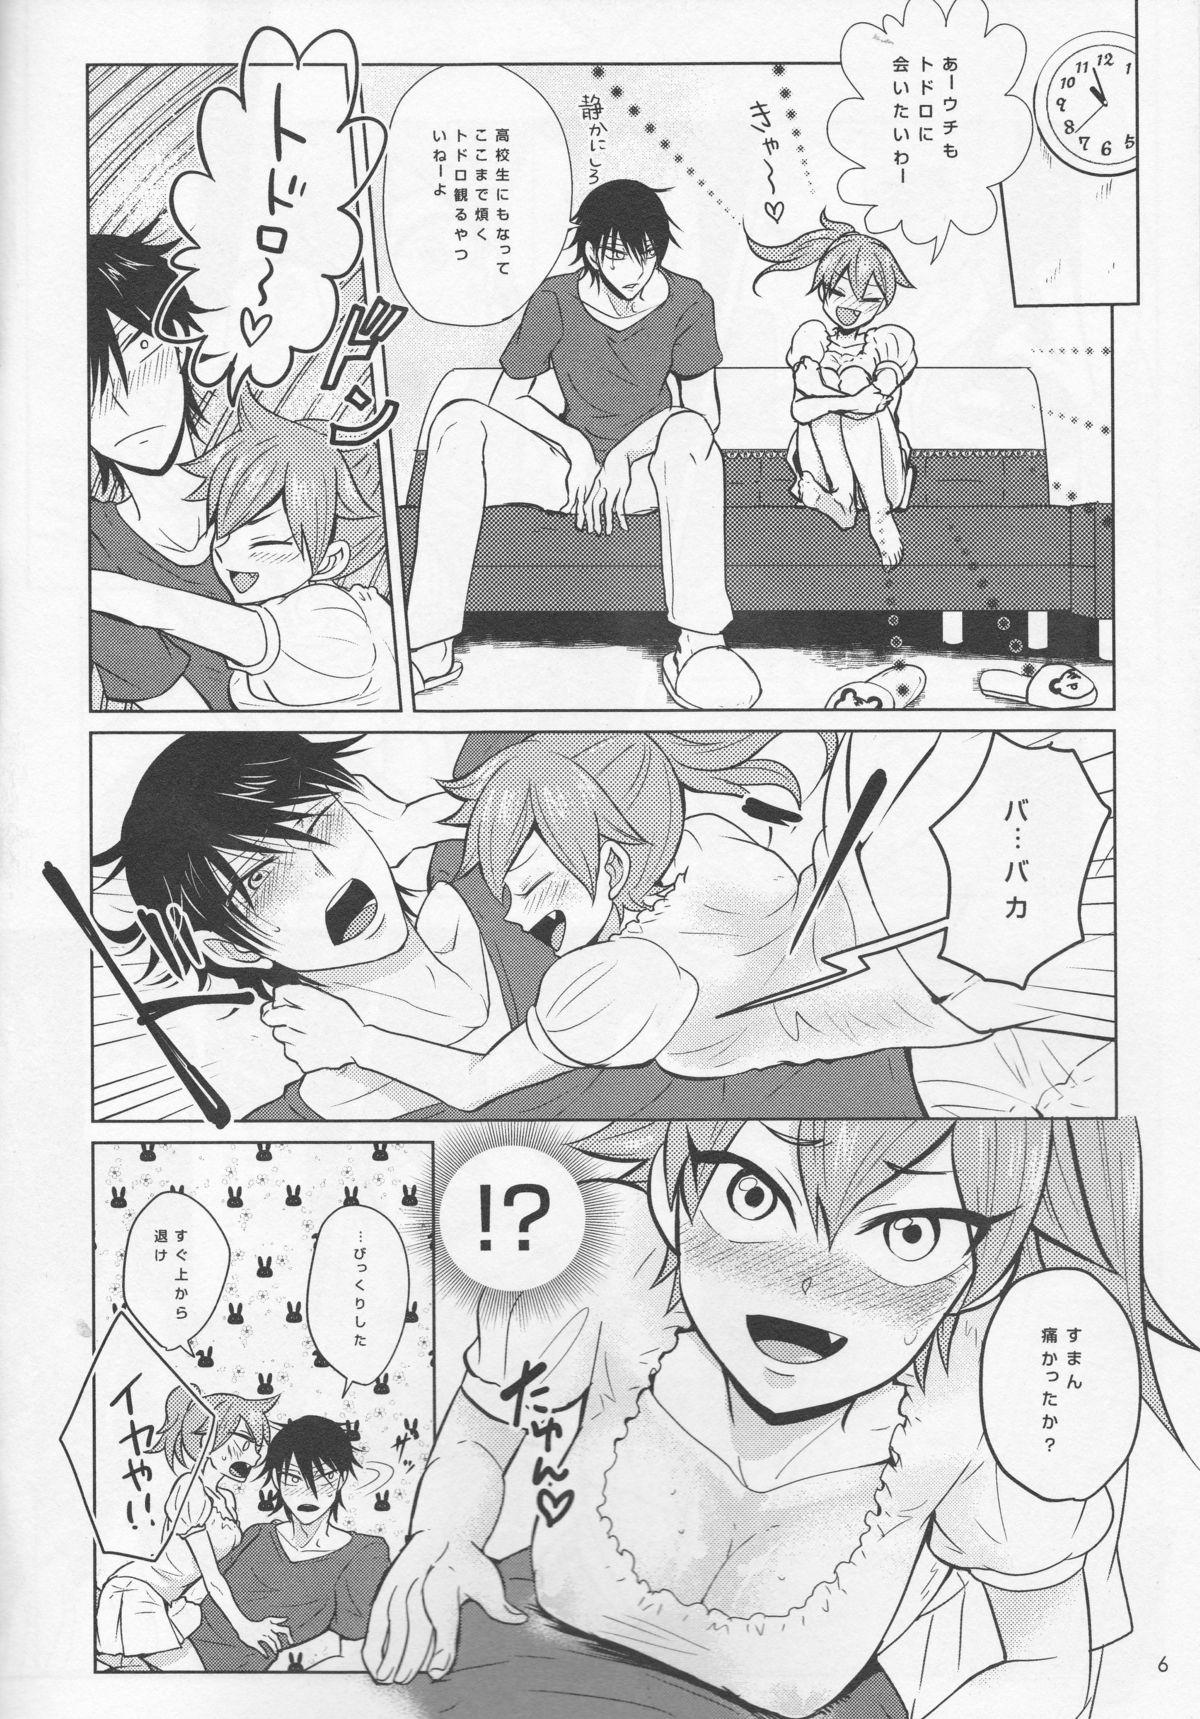 Stockings boy meets OPI - Yowamushi pedal Gay Cock - Page 6